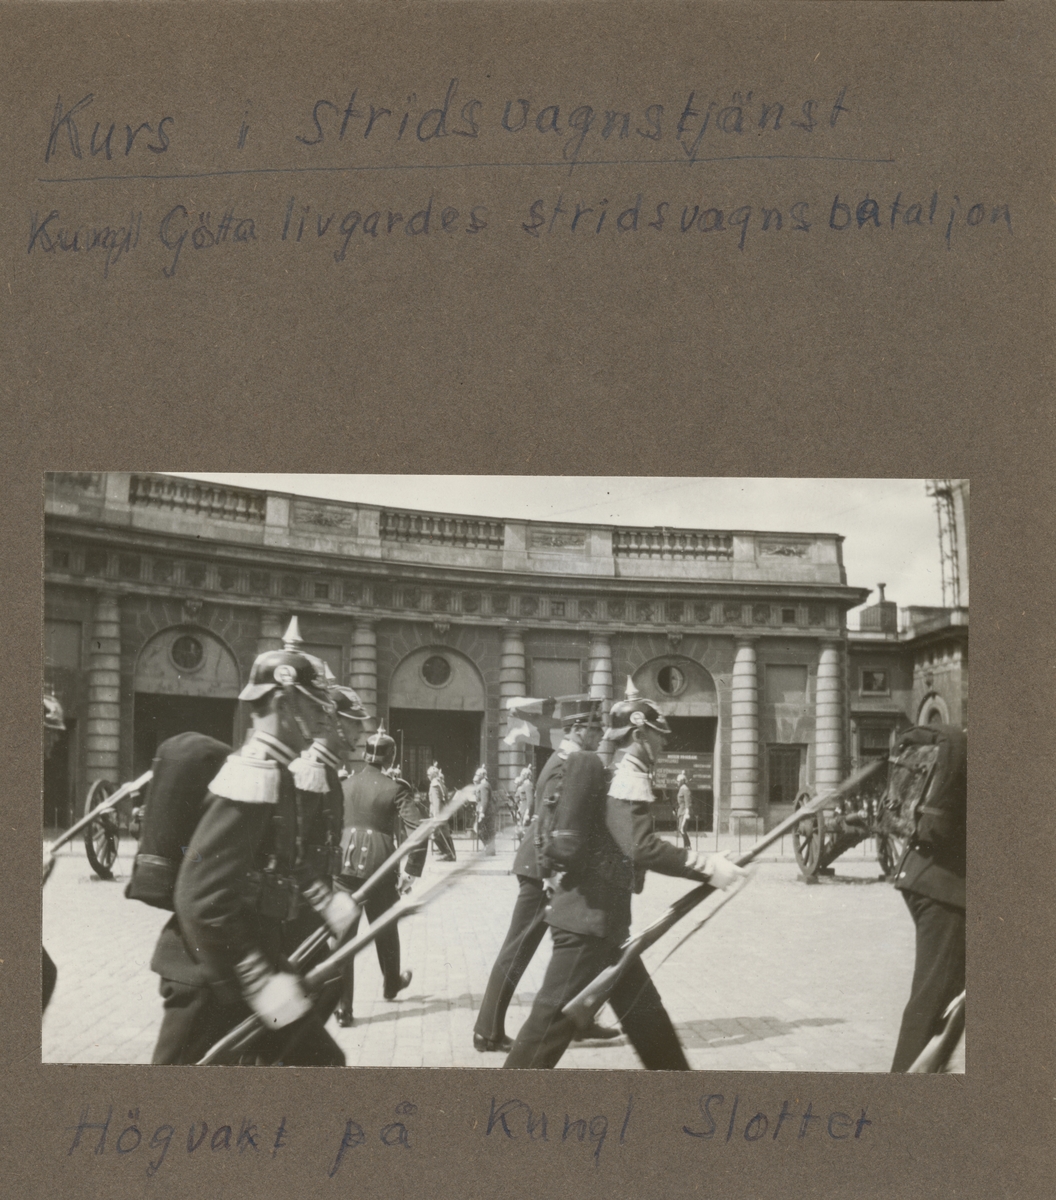 Högvakt på kungliga slottet i Stockholm.  Göta livgardes stridsvagnsbataljon, 1928-1930, 1:a kursen.